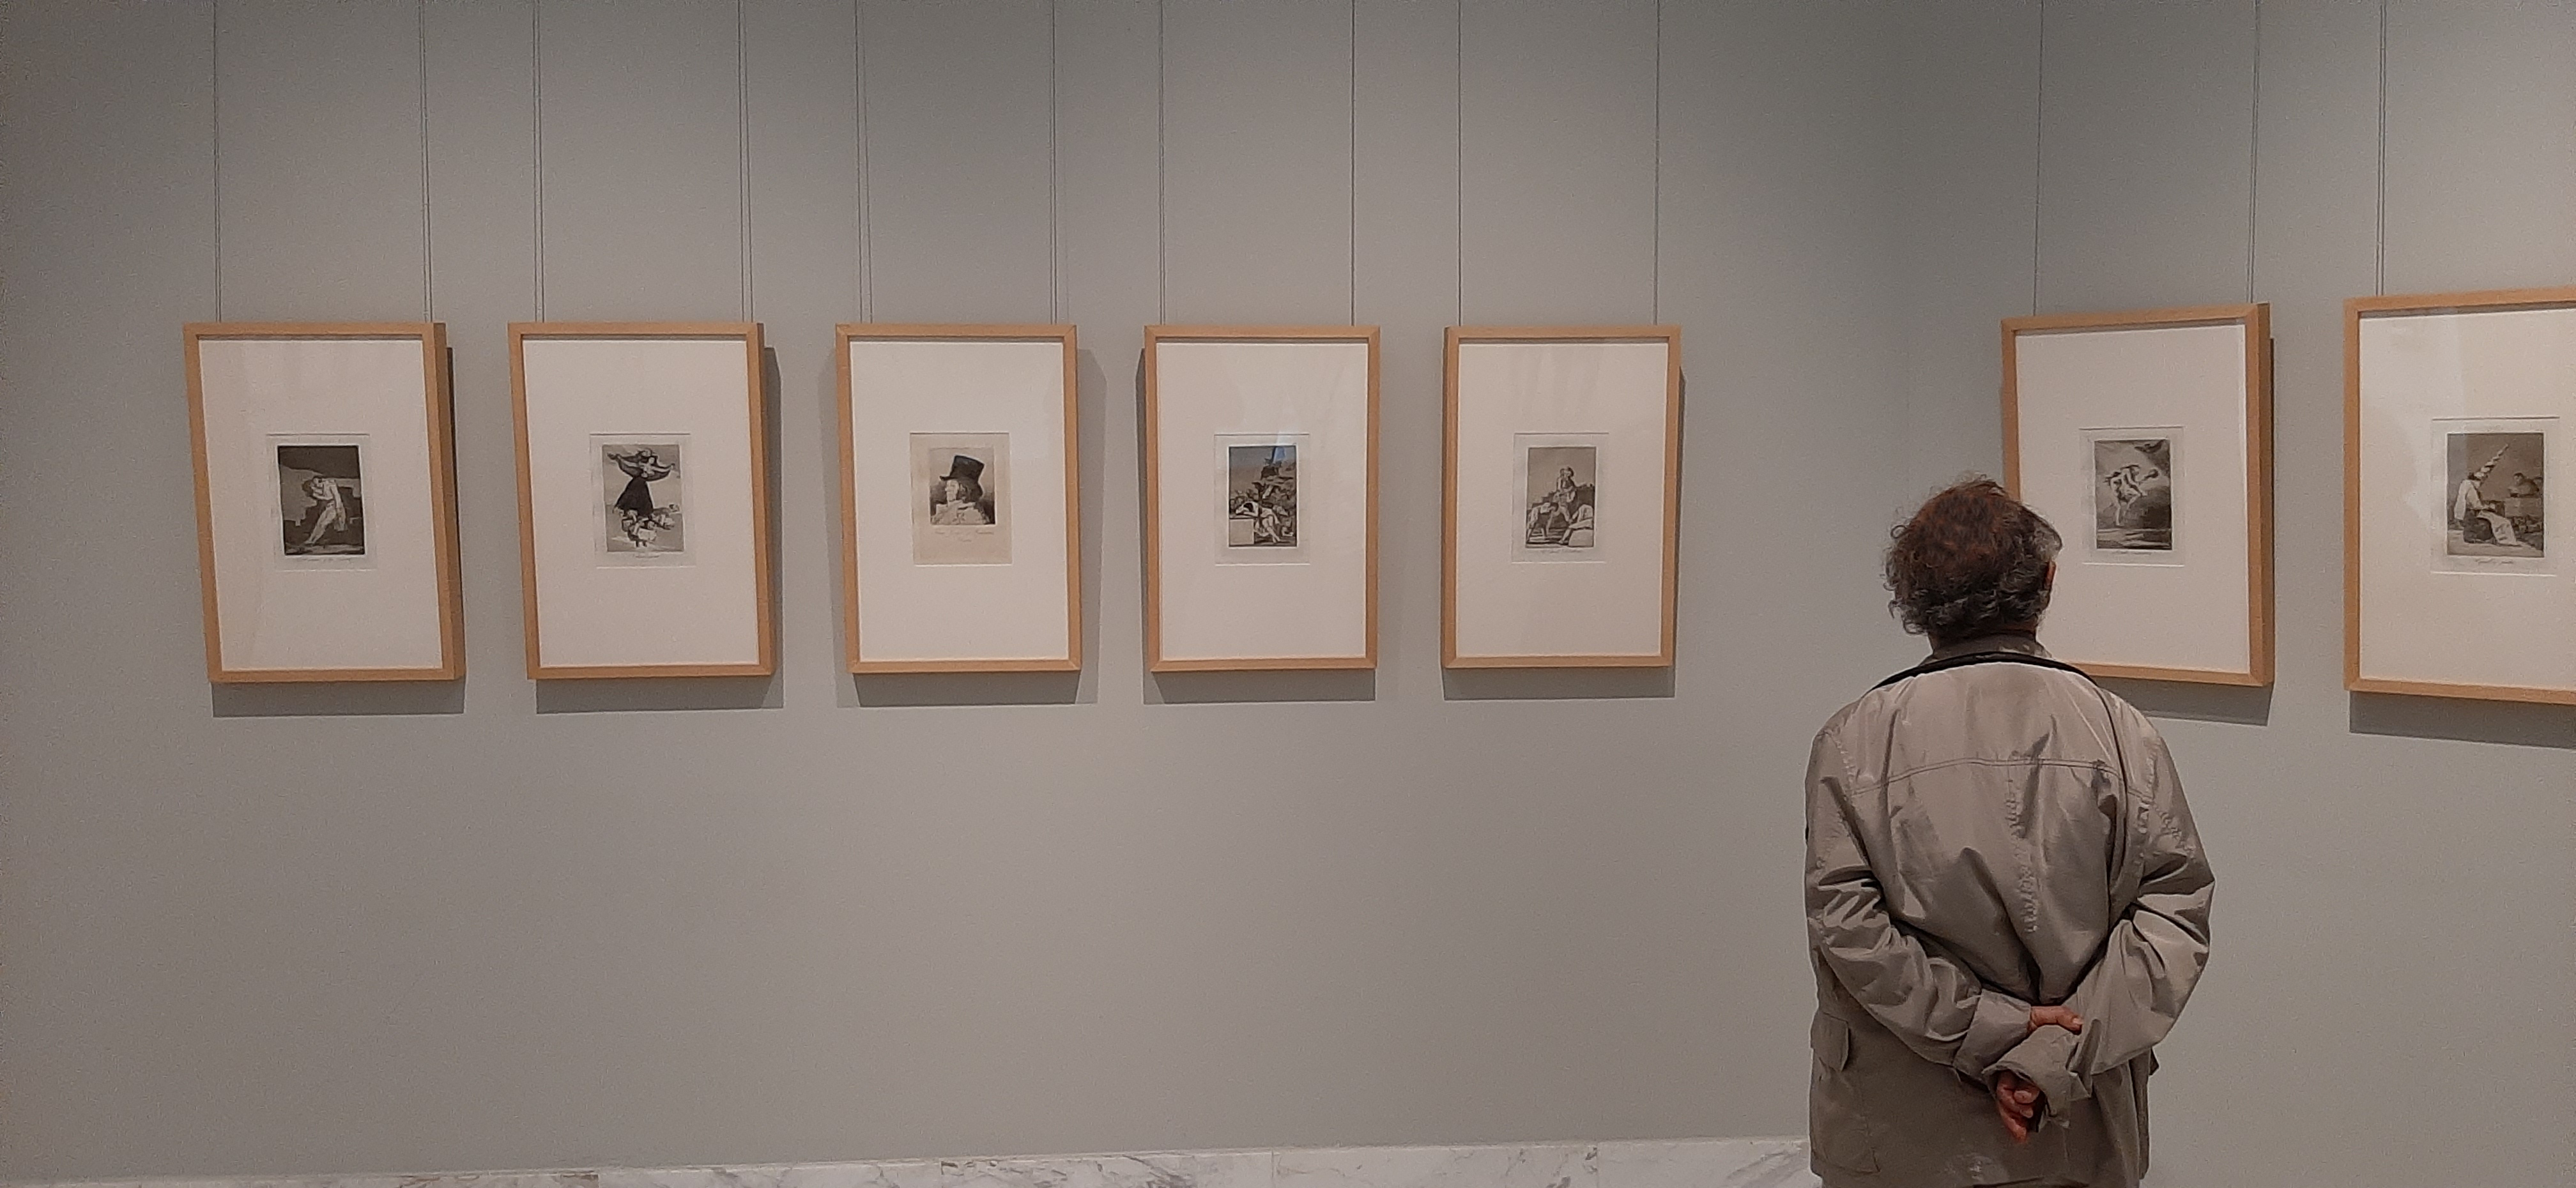 El Museu de Belles Arts de València rep la donació de la sèrie completa dels 'Capritxos' de Goya de 1868